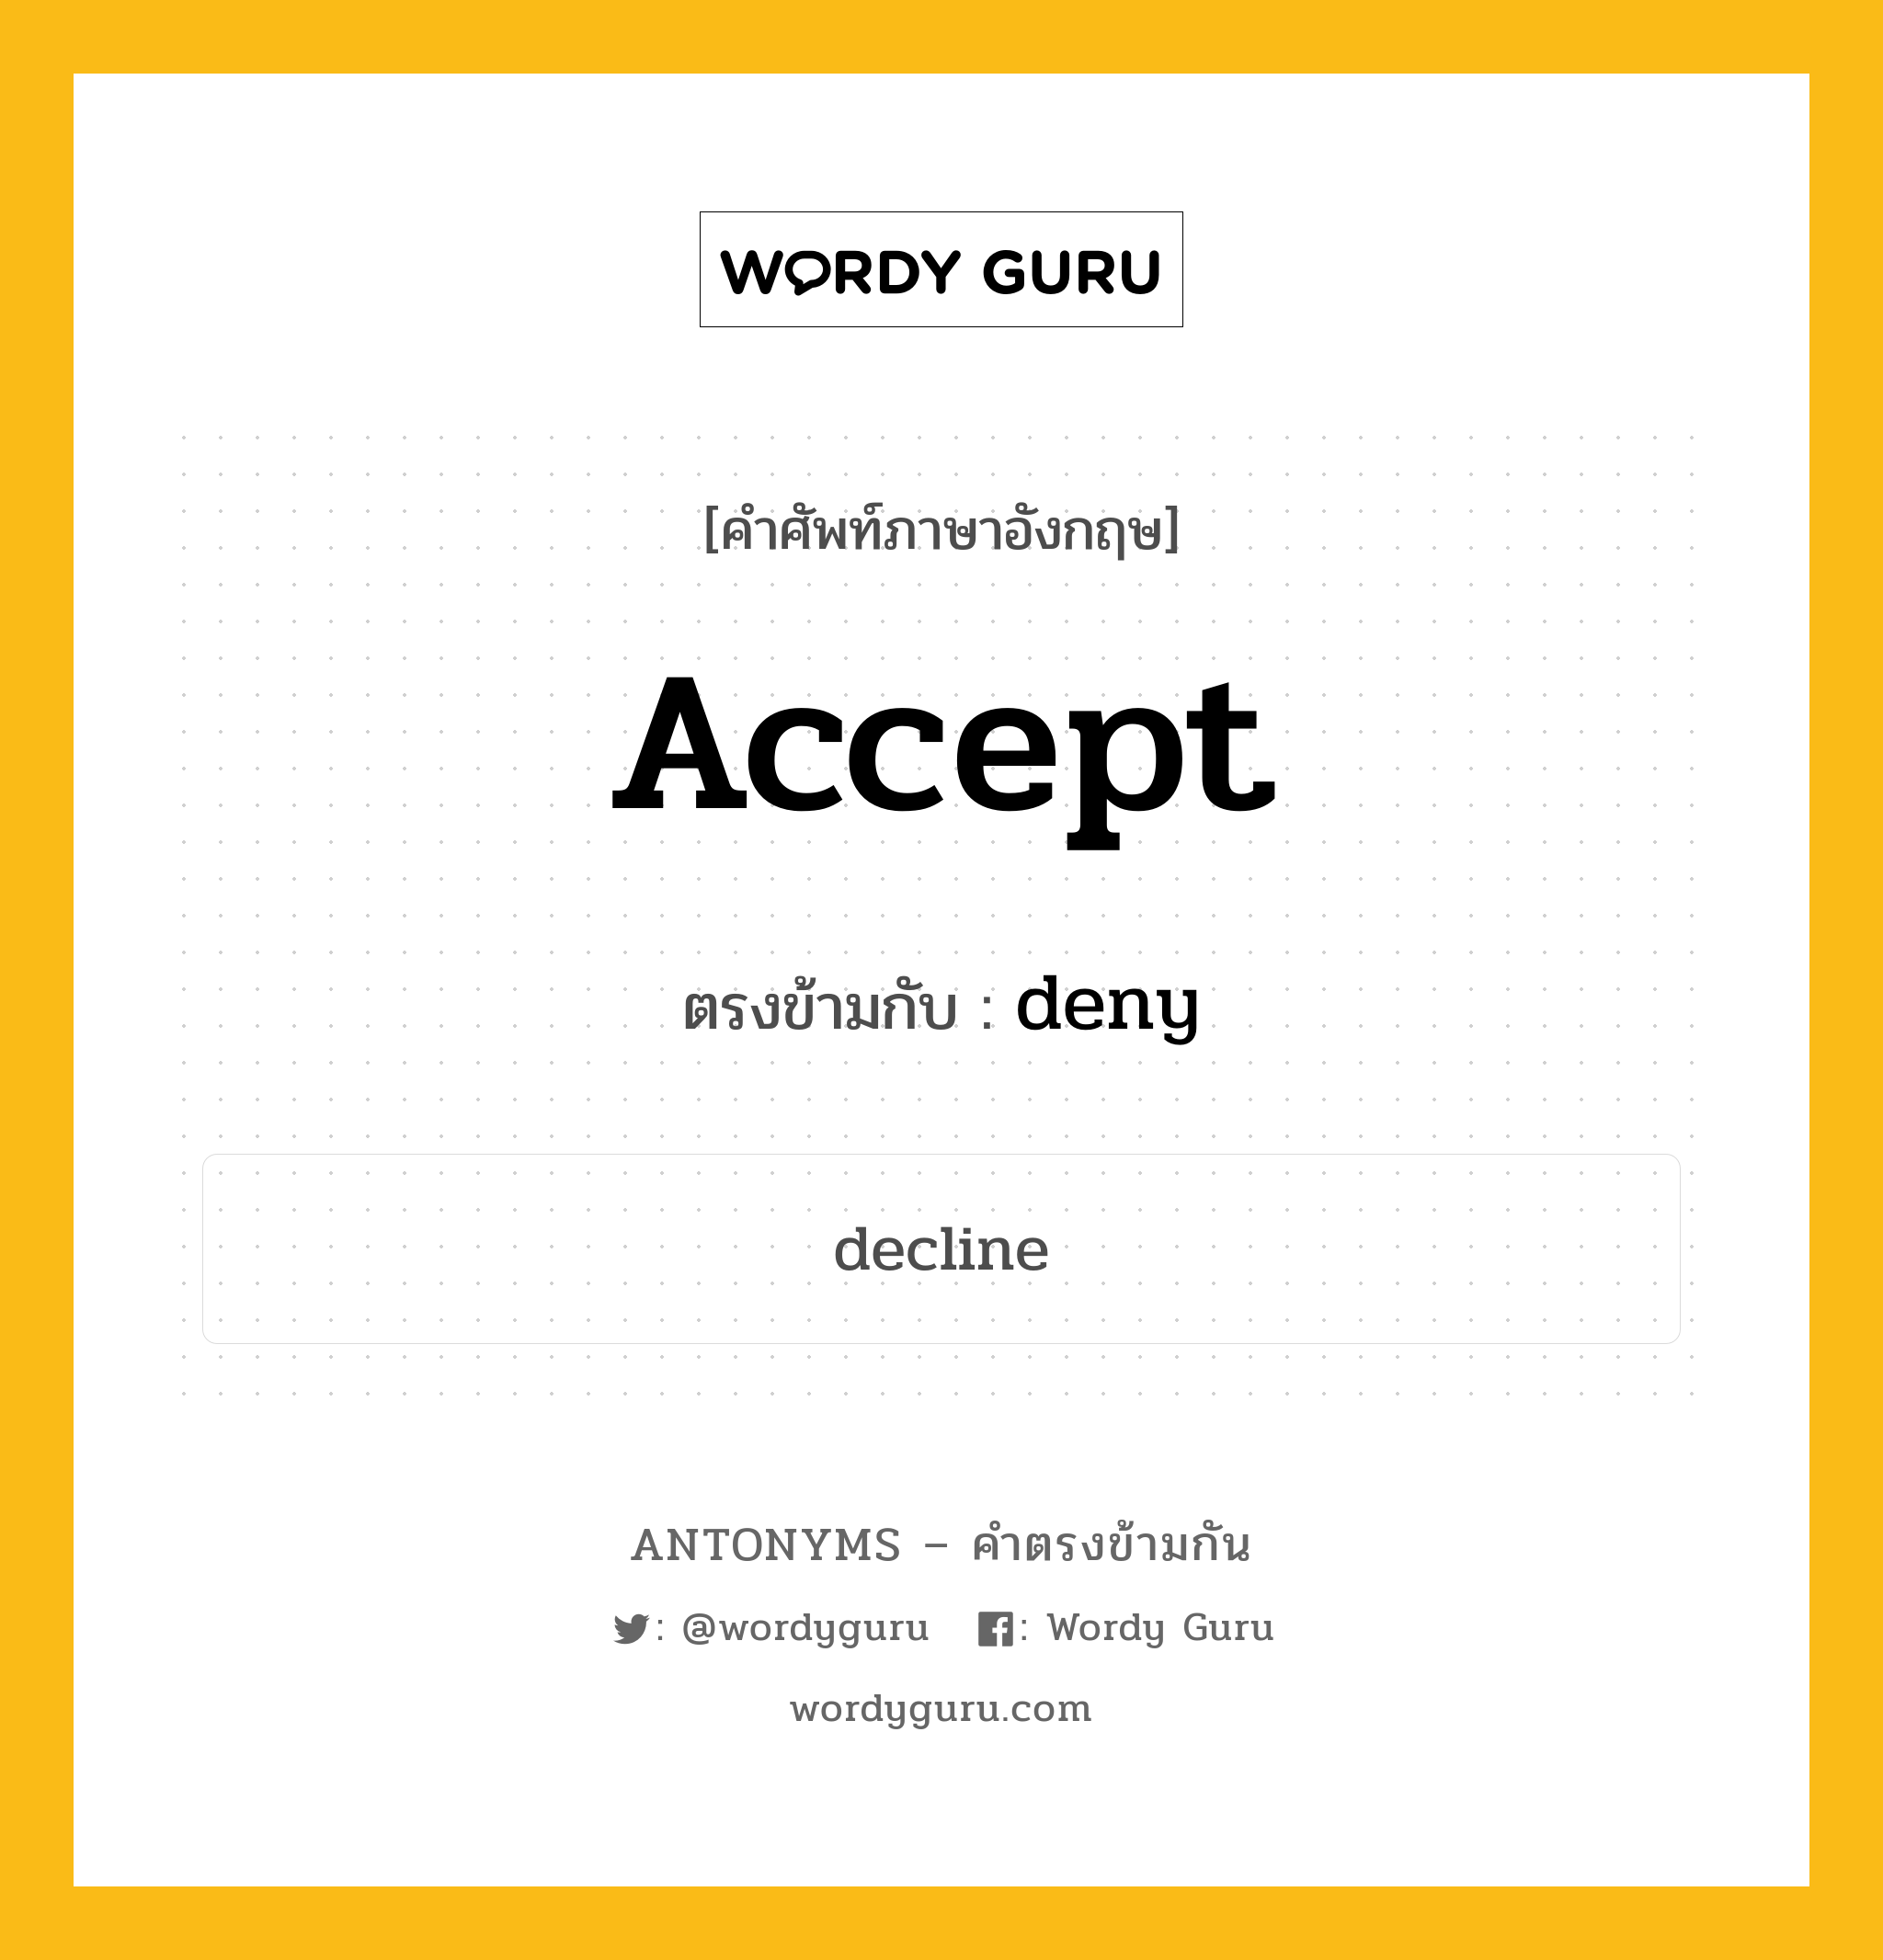 accept เป็นคำตรงข้ามกับคำไหนบ้าง?, คำศัพท์ภาษาอังกฤษ accept ตรงข้ามกับ deny หมวด deny